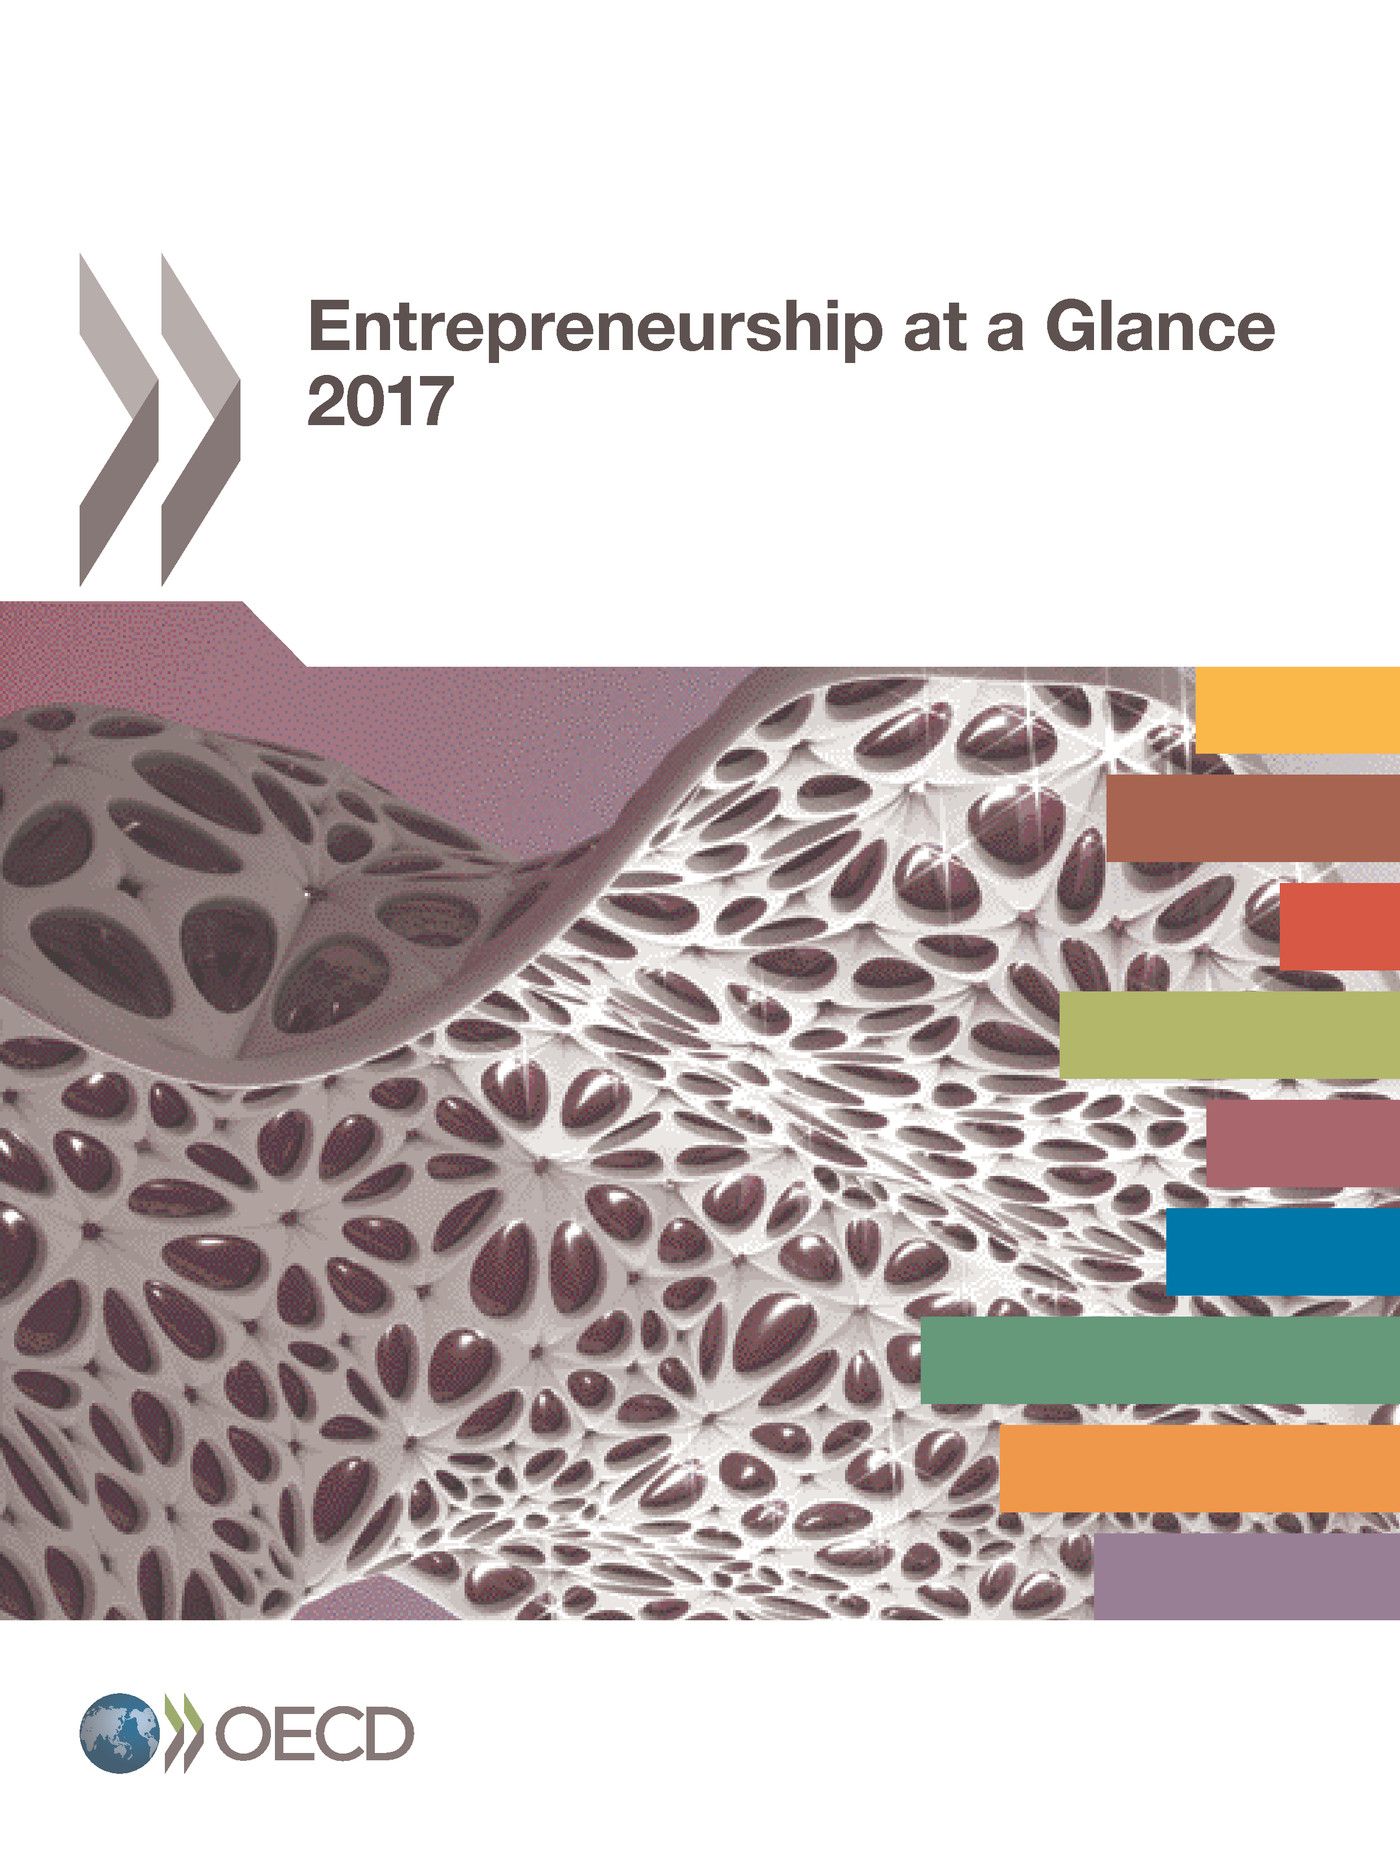 Entrepreneurship at a Glance 2017 -  Collectif - OCDE / OECD